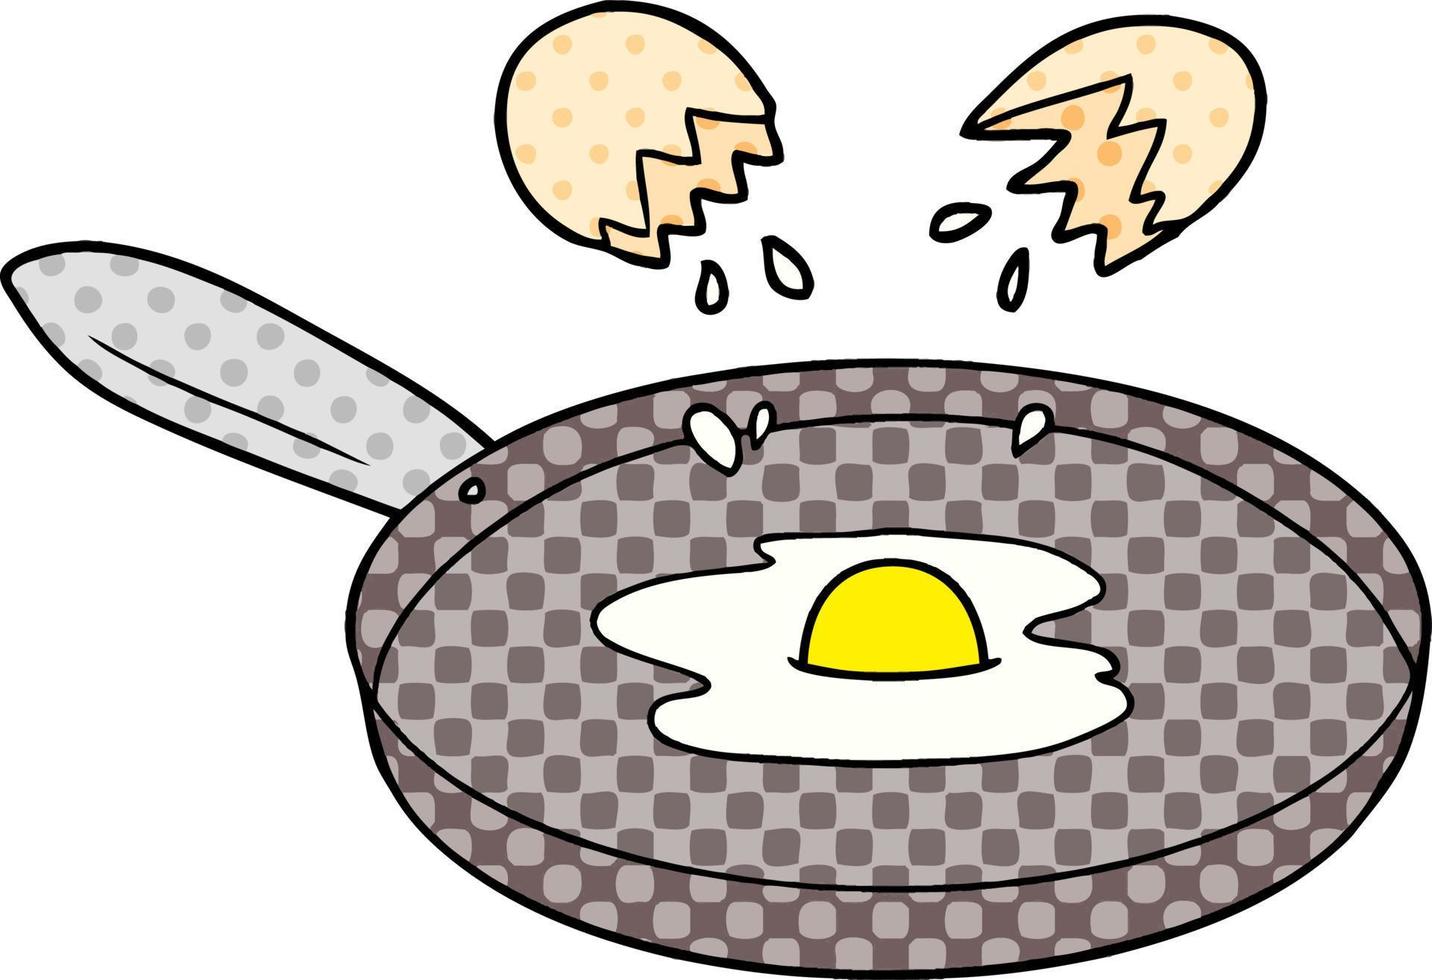 sartén de dibujos animados huevo frito vector